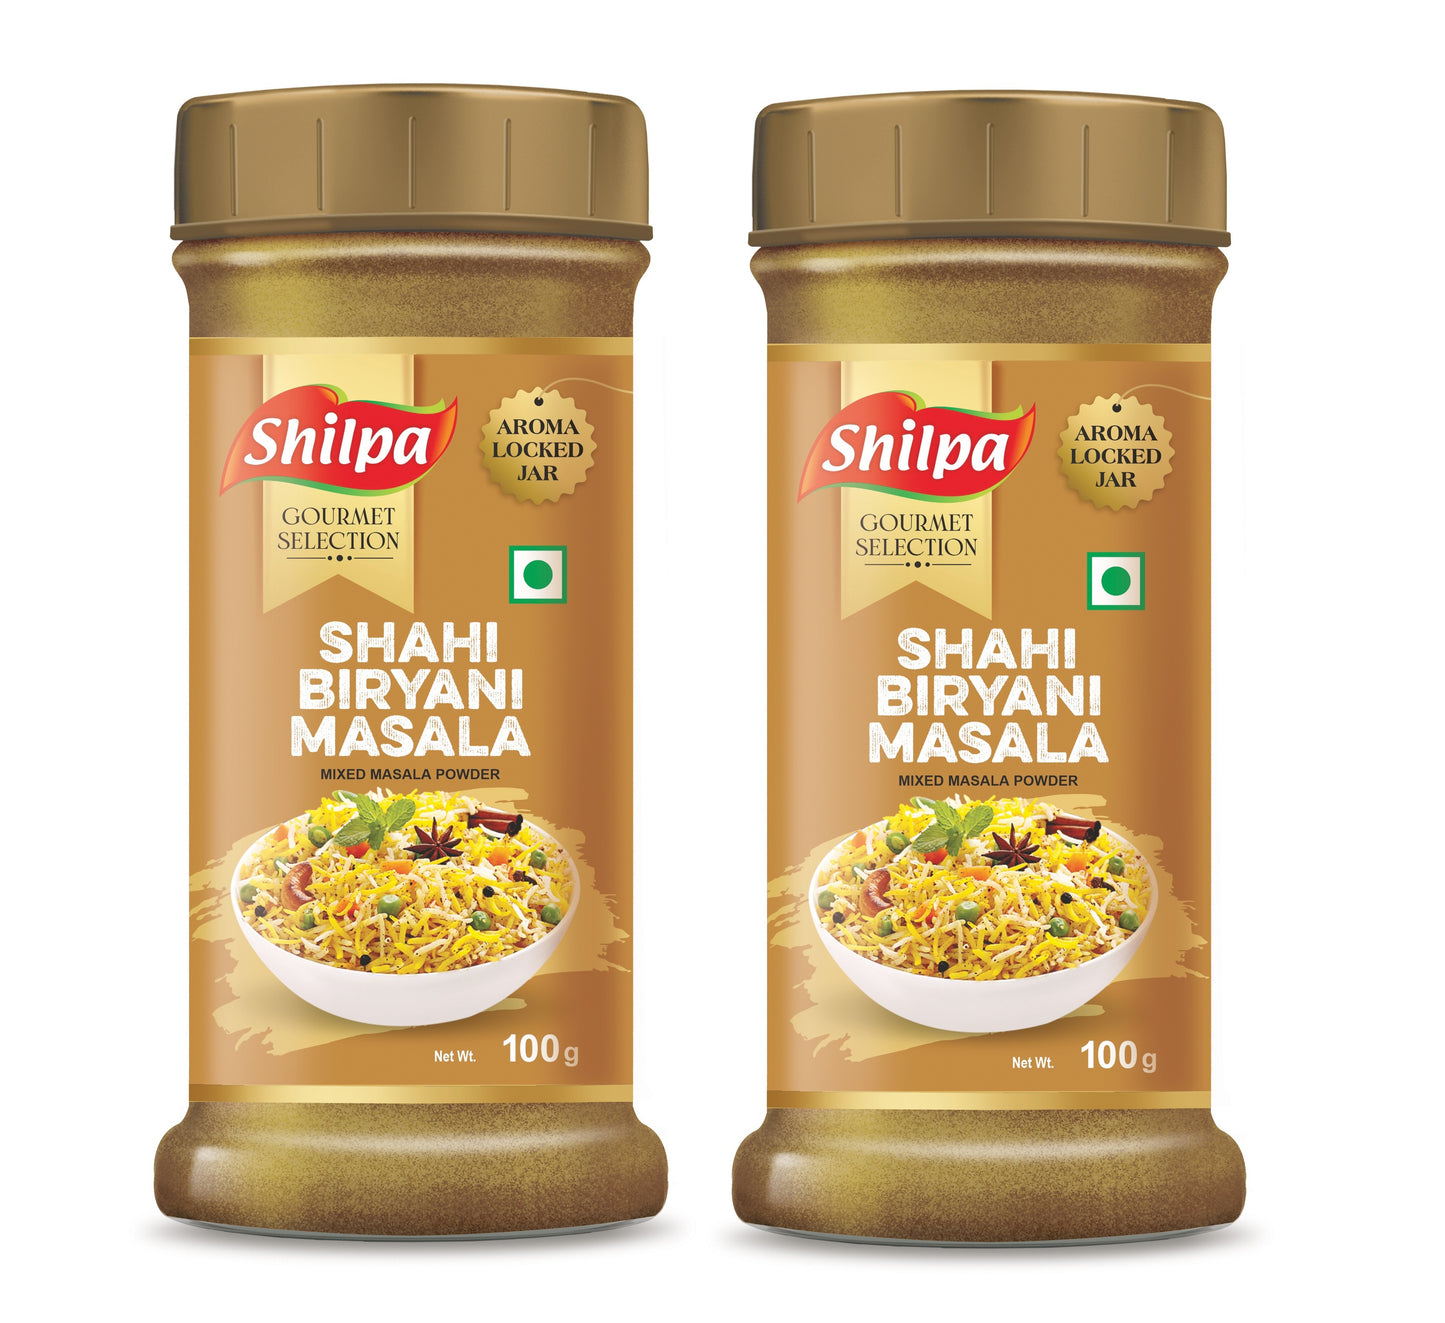 Shilpa Shahi Biryani Masala, Mixed Masala Powder 100g Jar